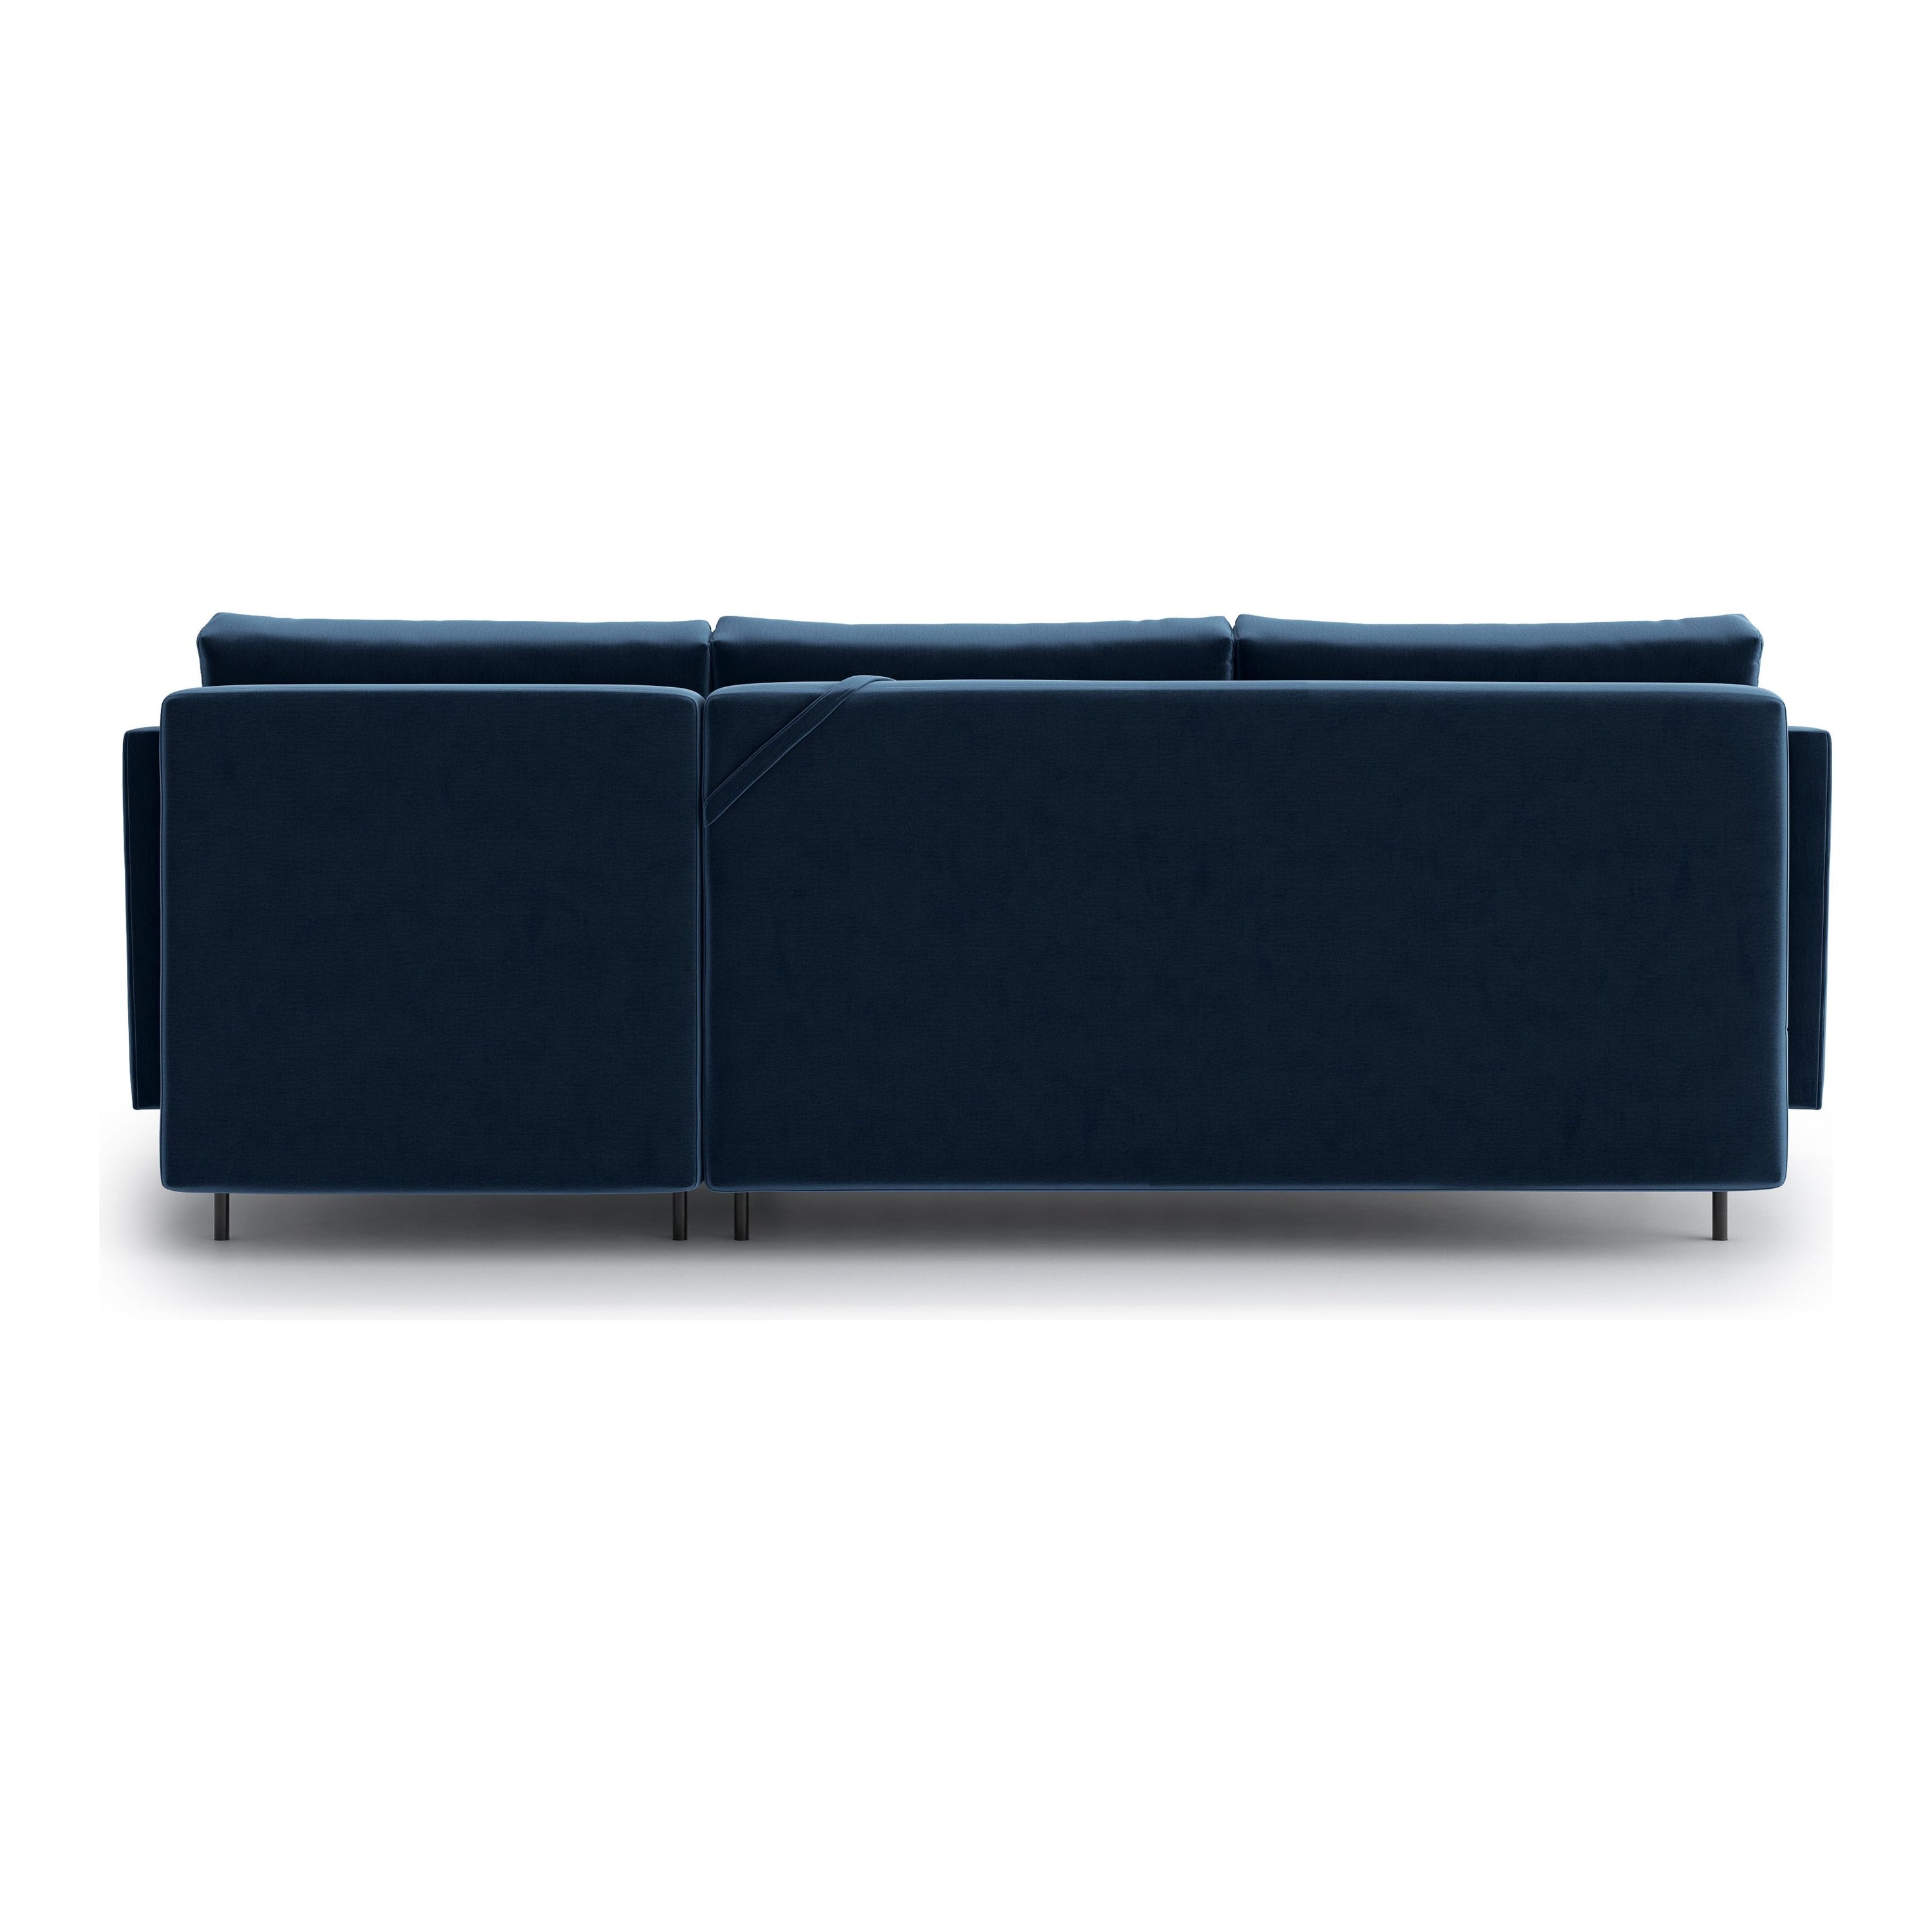 SALMA kampinė sofa lova, mėlyna spalva, universali kampo pusė